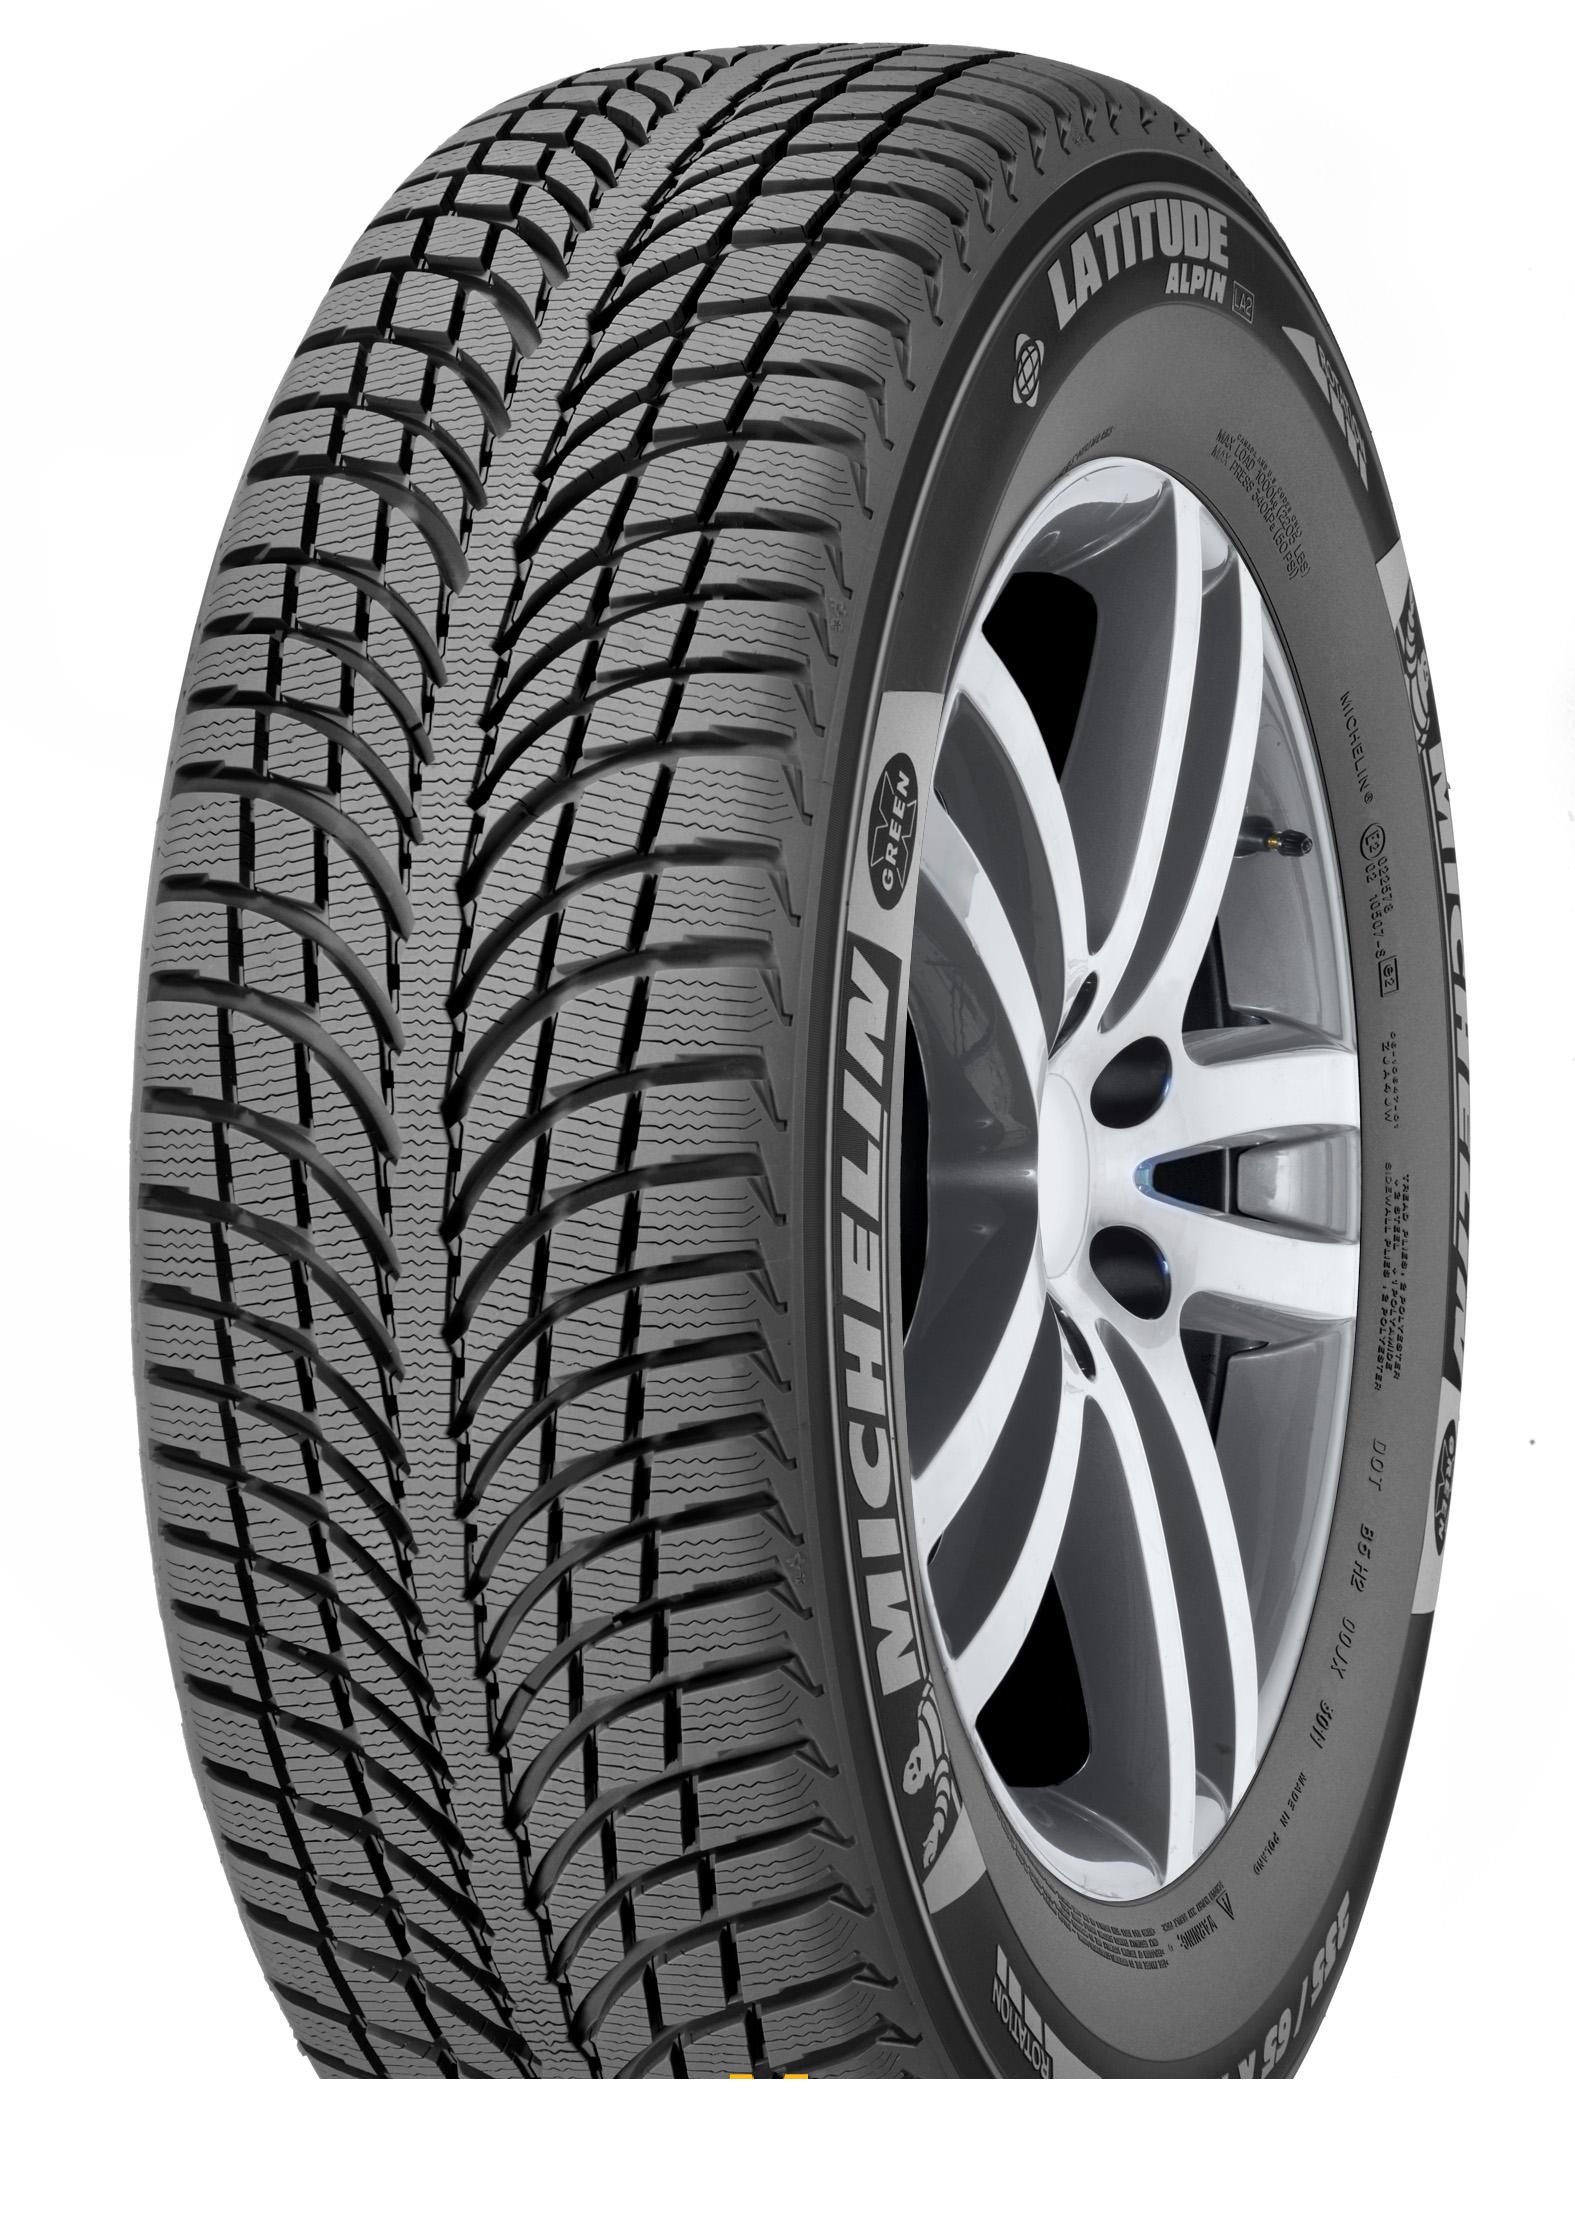 Tire Michelin Latitude Alpin 2 265/45R20 108V - picture, photo, image